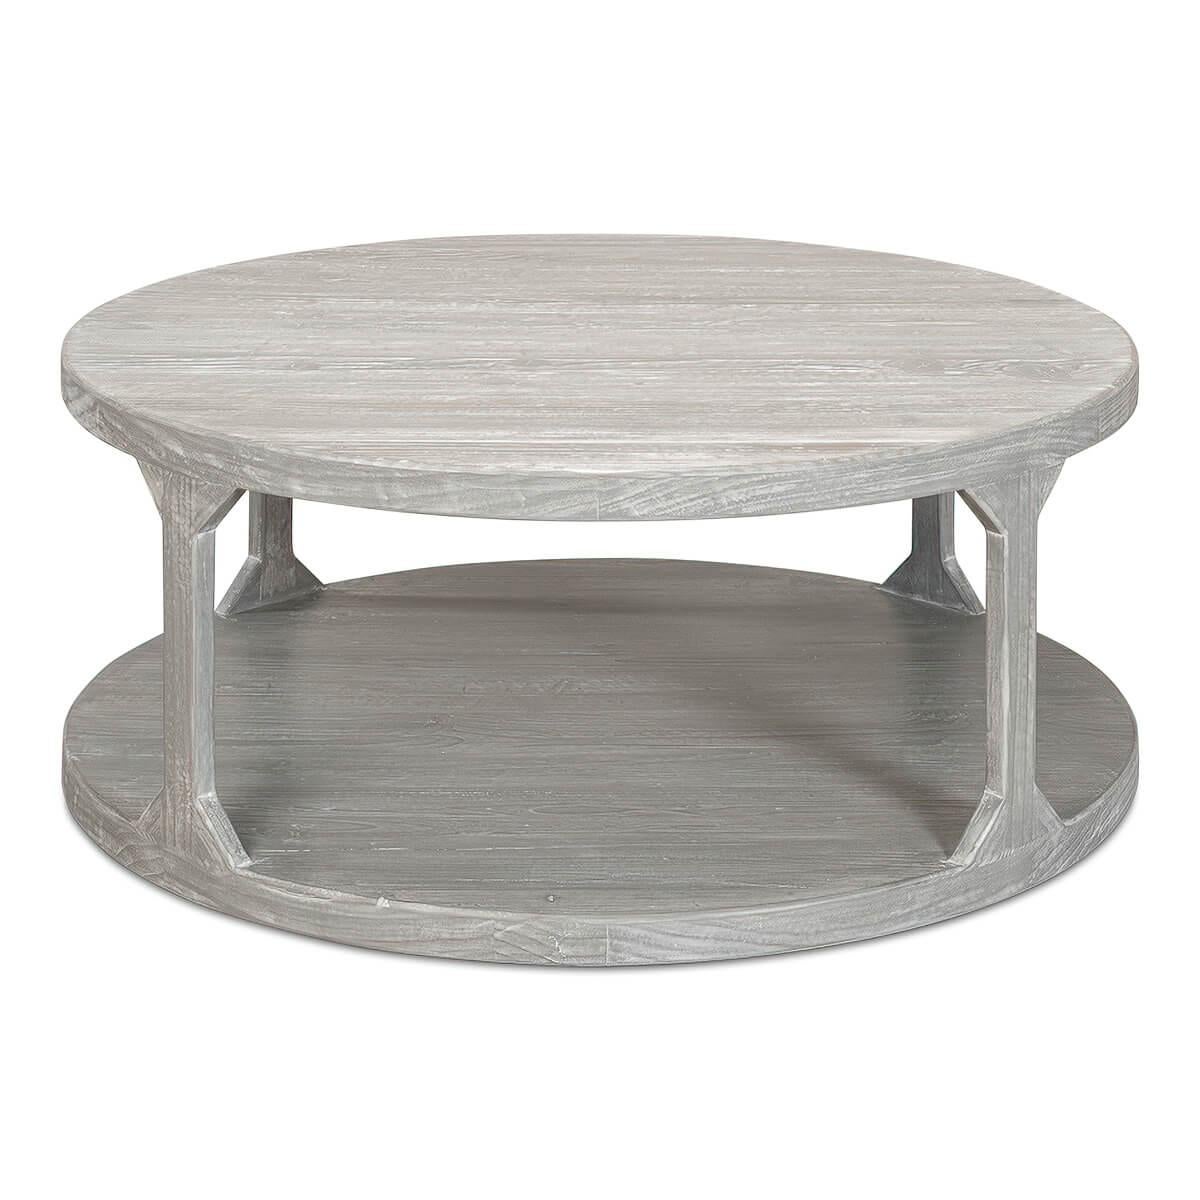 Table basse ronde moderne et organique, la table à deux niveaux est finie en pin grisonnant.

Dimensions : 45